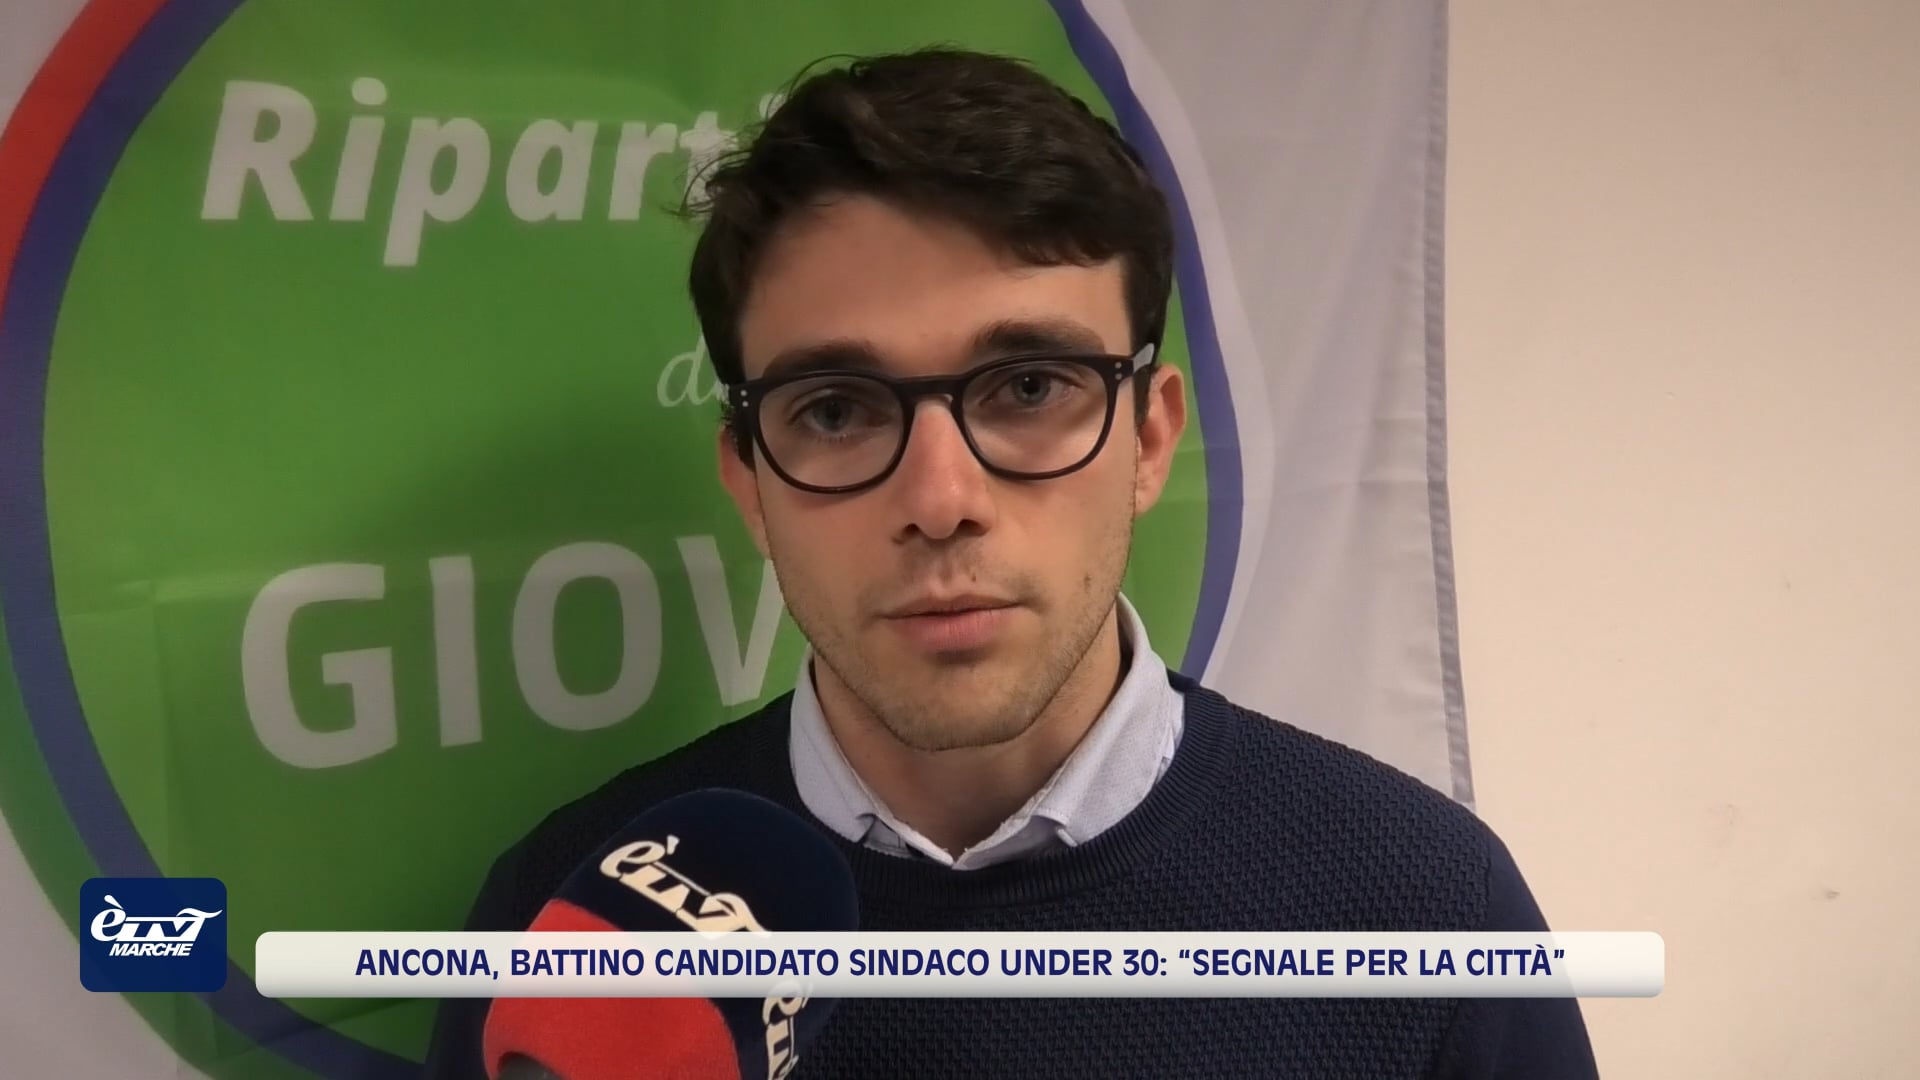 Ancona, Battino candidato sindaco under 30: “Segnale per la città” - VIDEO